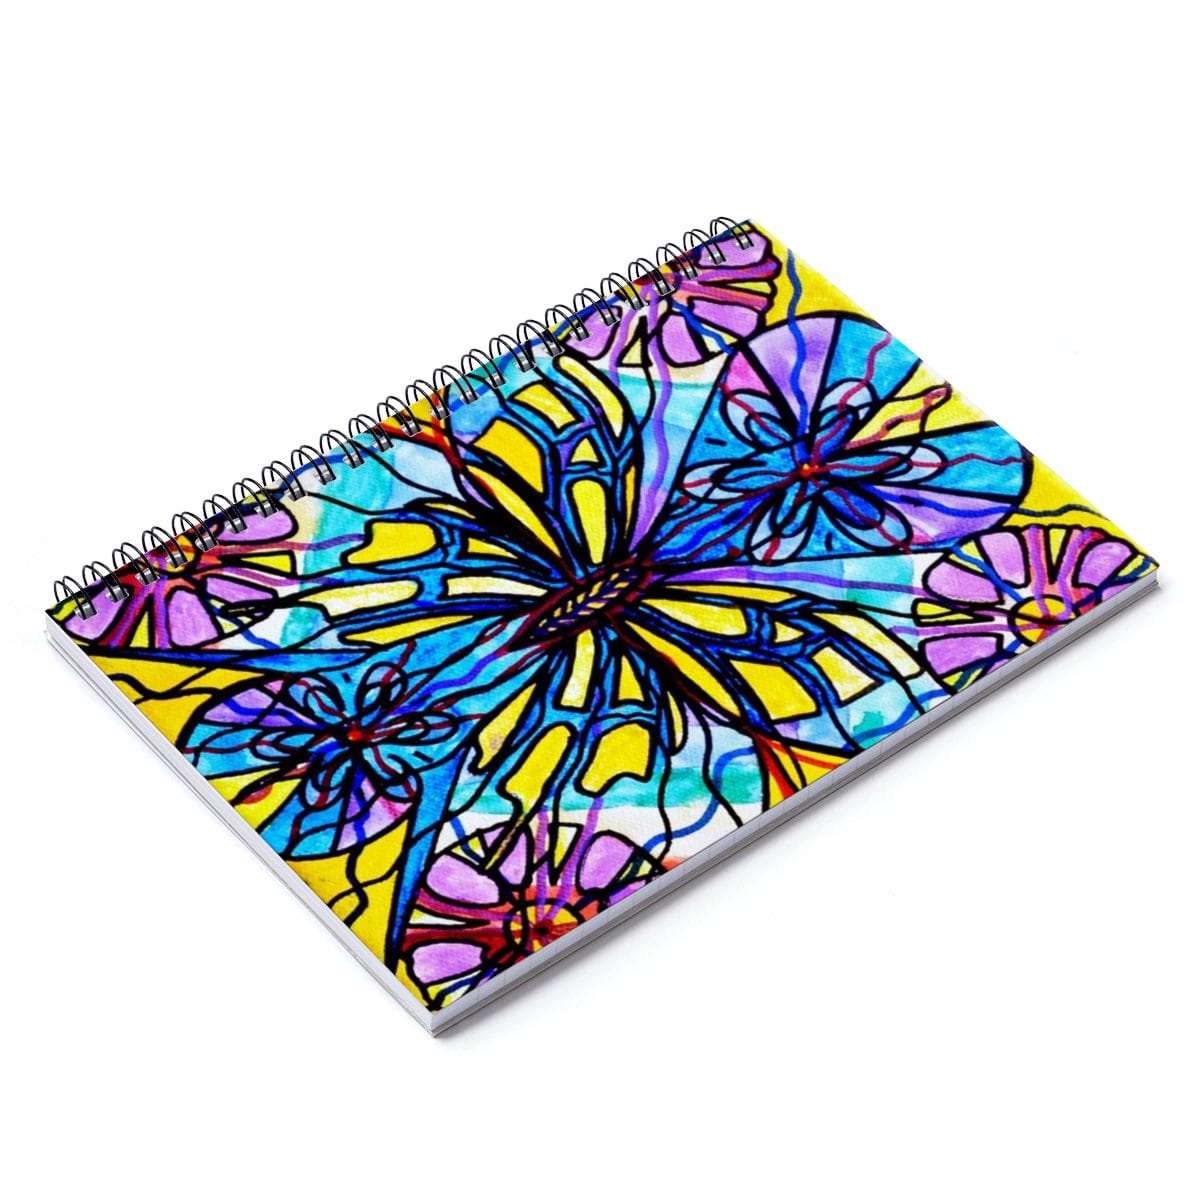 Butterfly - Spiral Notebook